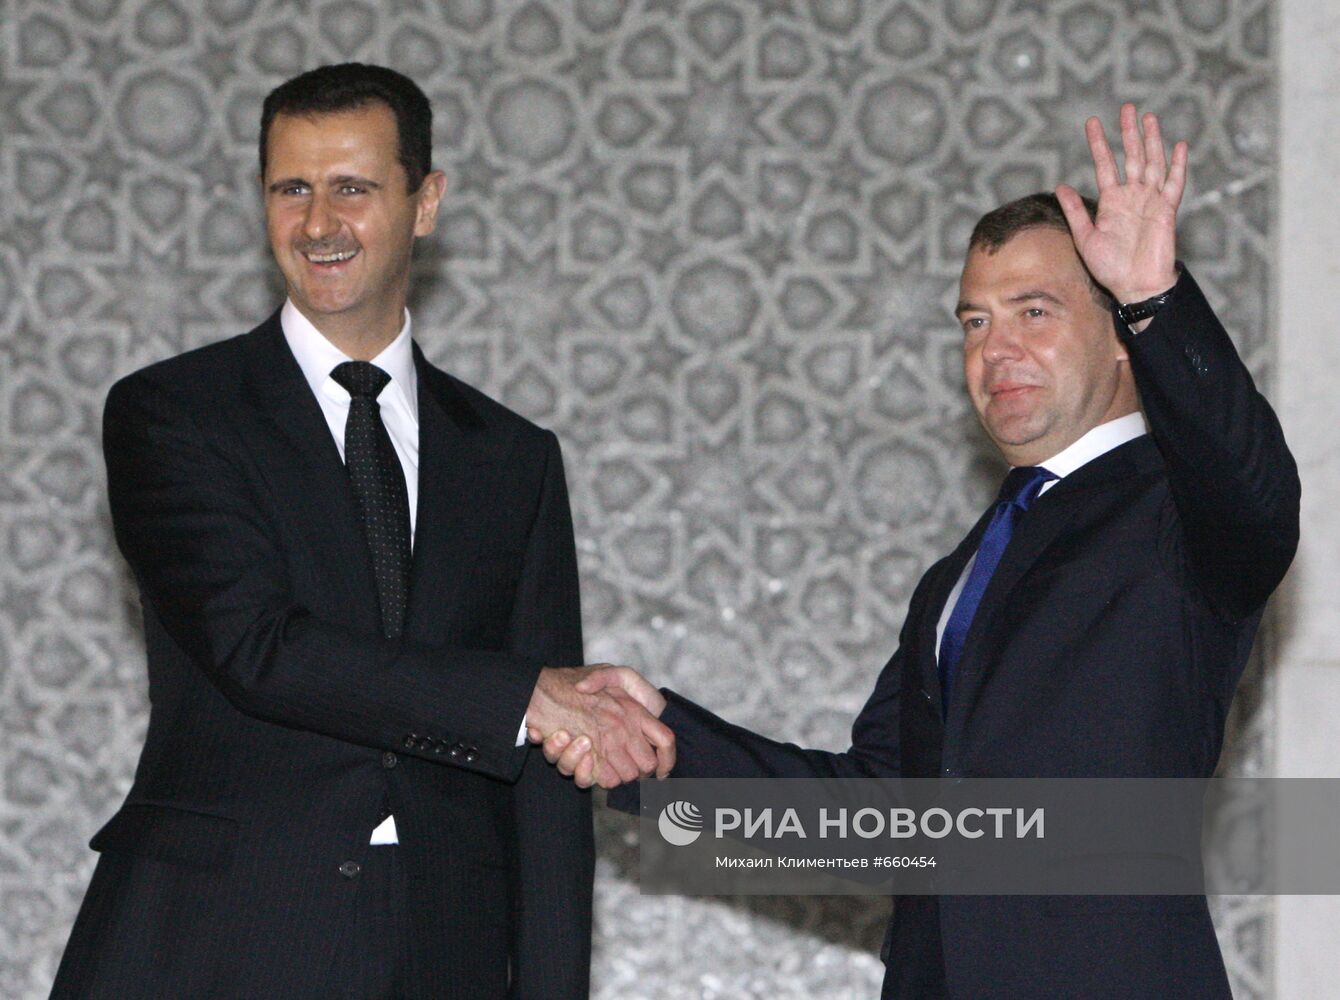 Официальный визит Дмитрия Медведева в Сирию